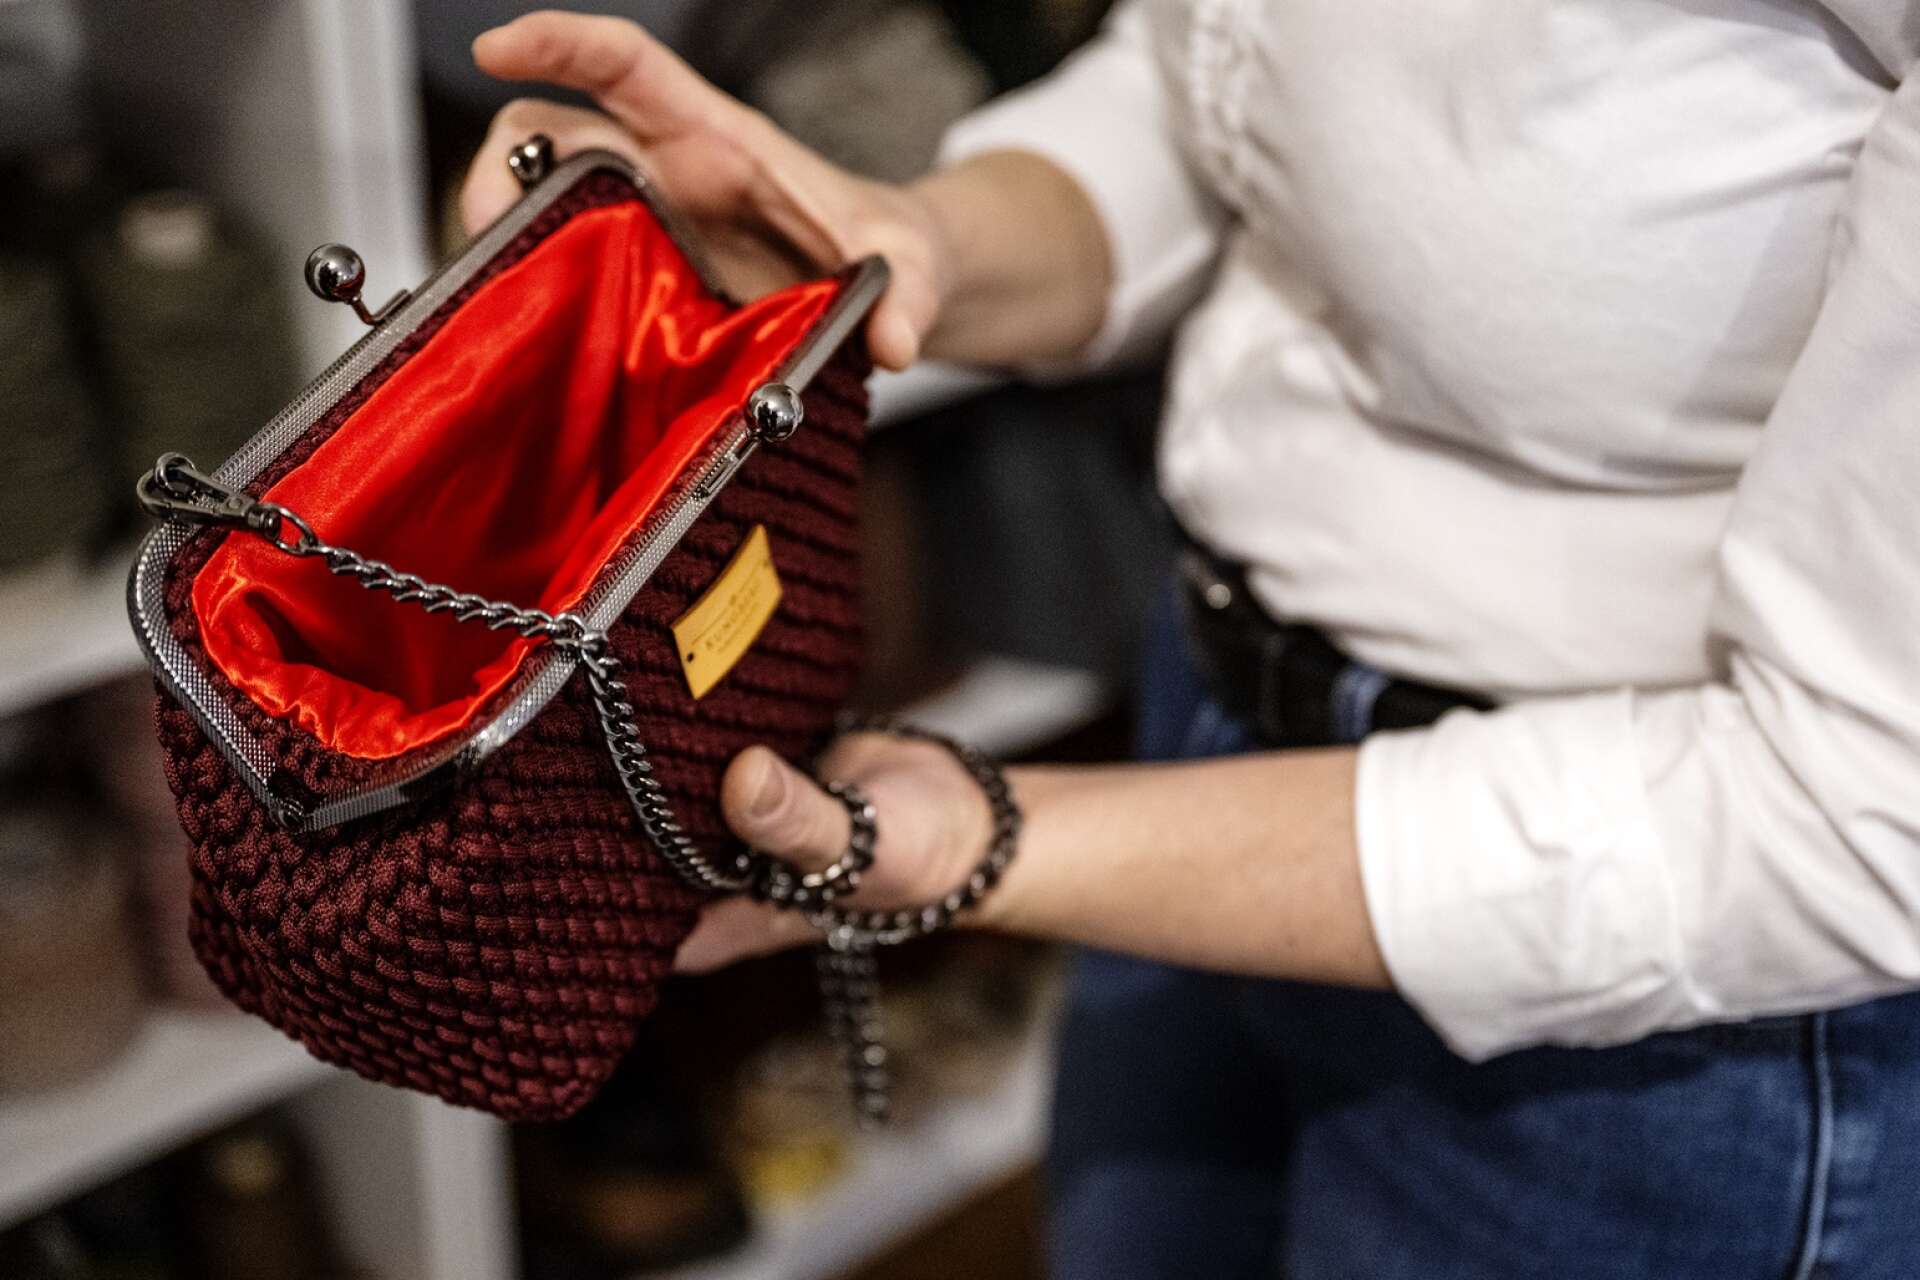 Kungbergs väskor är fodrade med rött tyg, vilket står för stil och elegans.